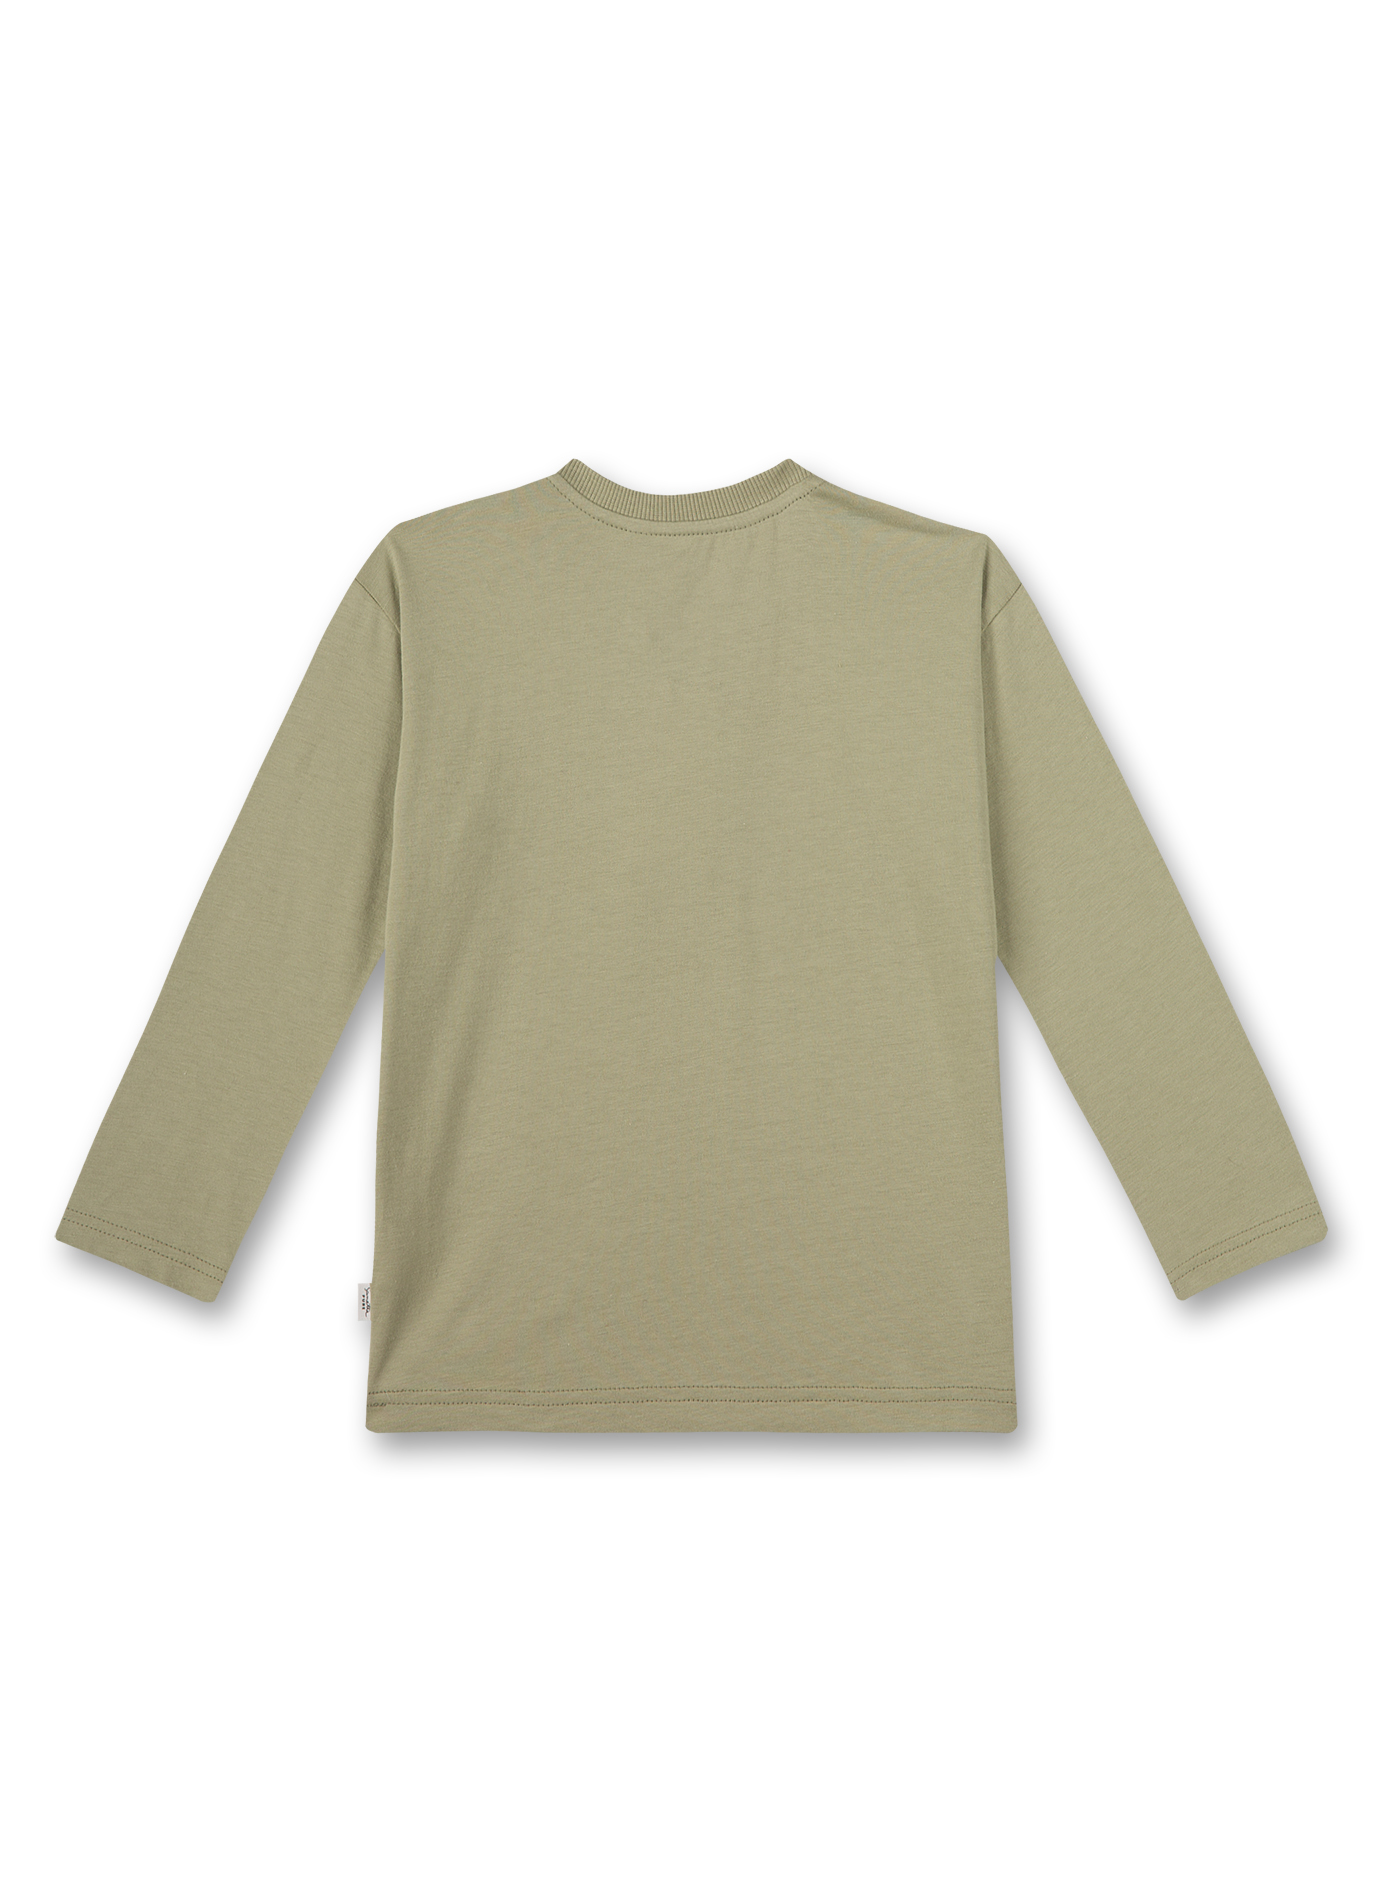 Jungen-Shirt langarm Grün